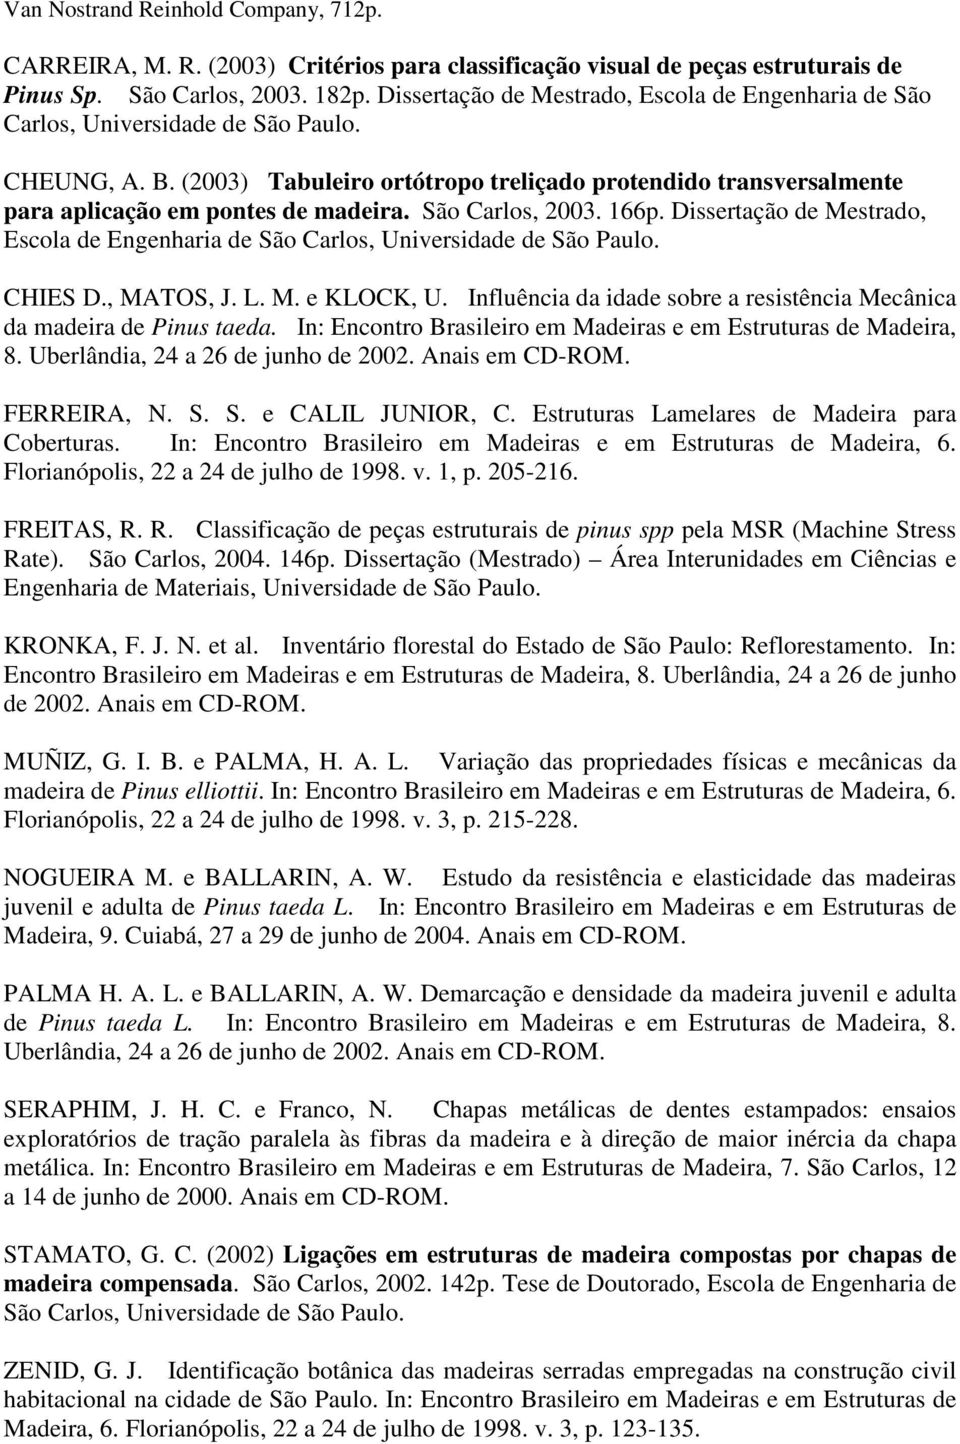 (2003) Tabuleiro ortótropo treliçado protendido transversalmente para aplicação em pontes de madeira. São Carlos, 2003. 166p.